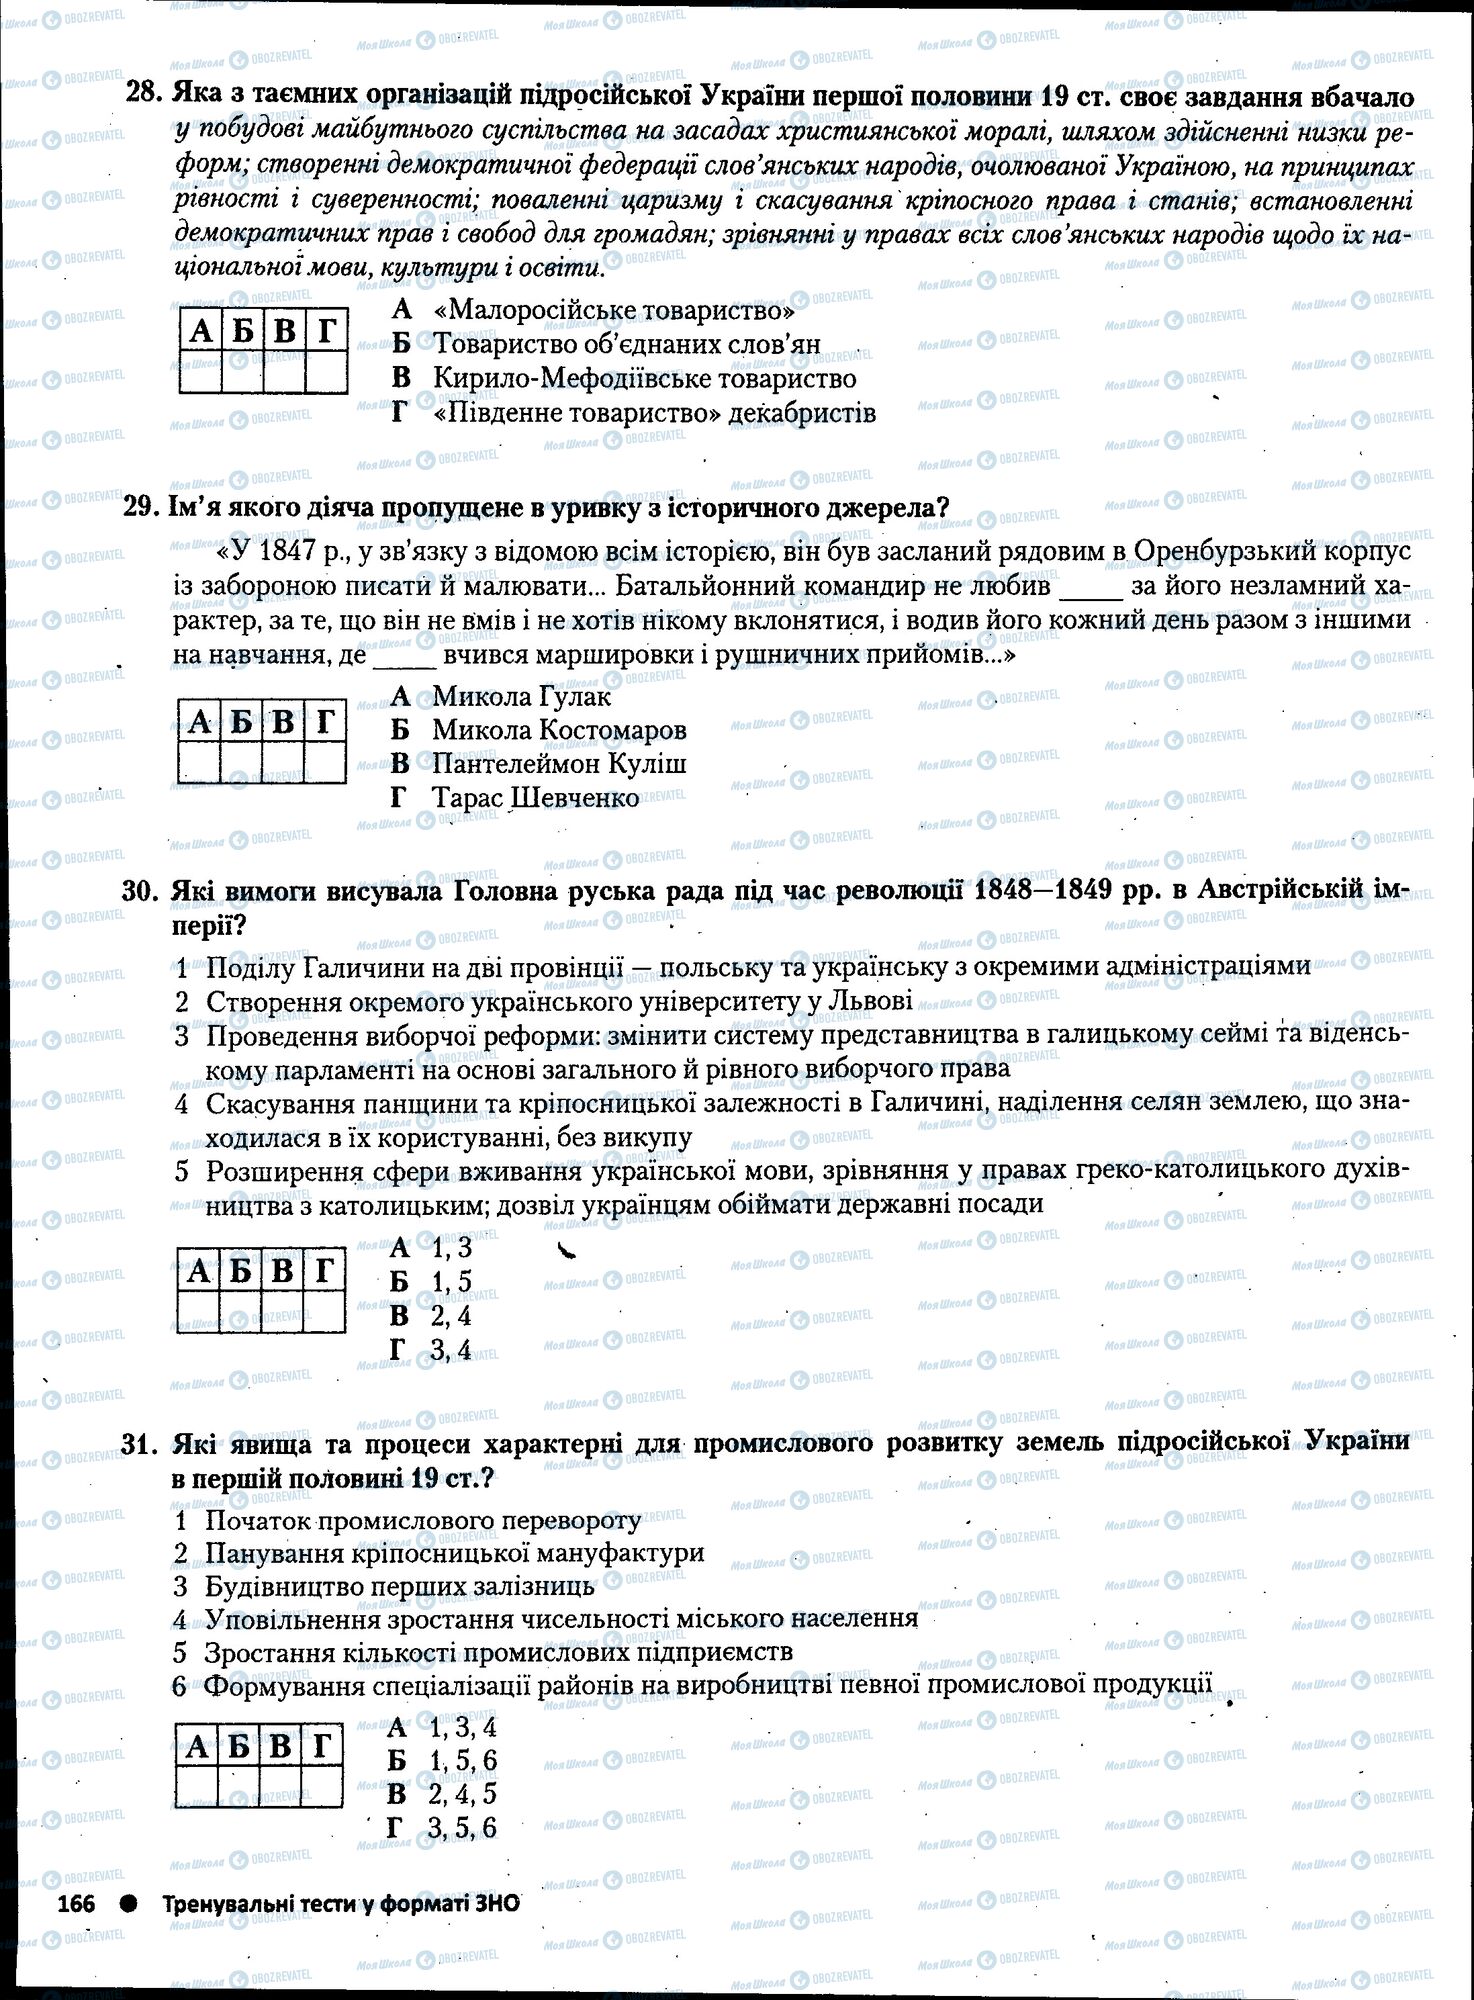 ЗНО История Украины 11 класс страница 166